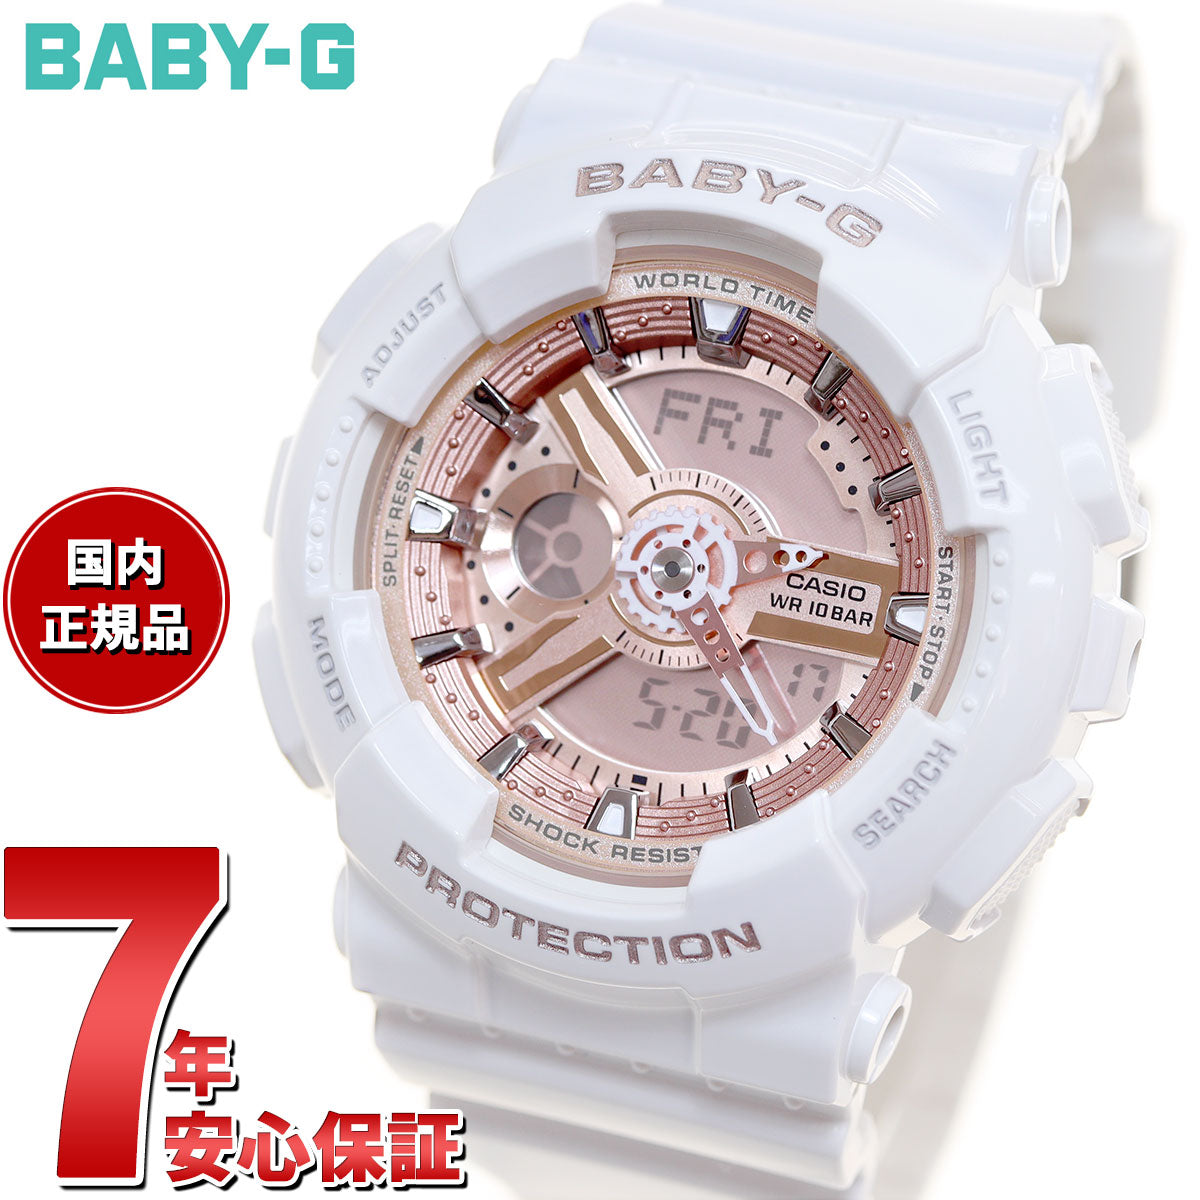 BABY-G カシオ ベビーG レディース 腕時計 ホワイト 白 ピンク 